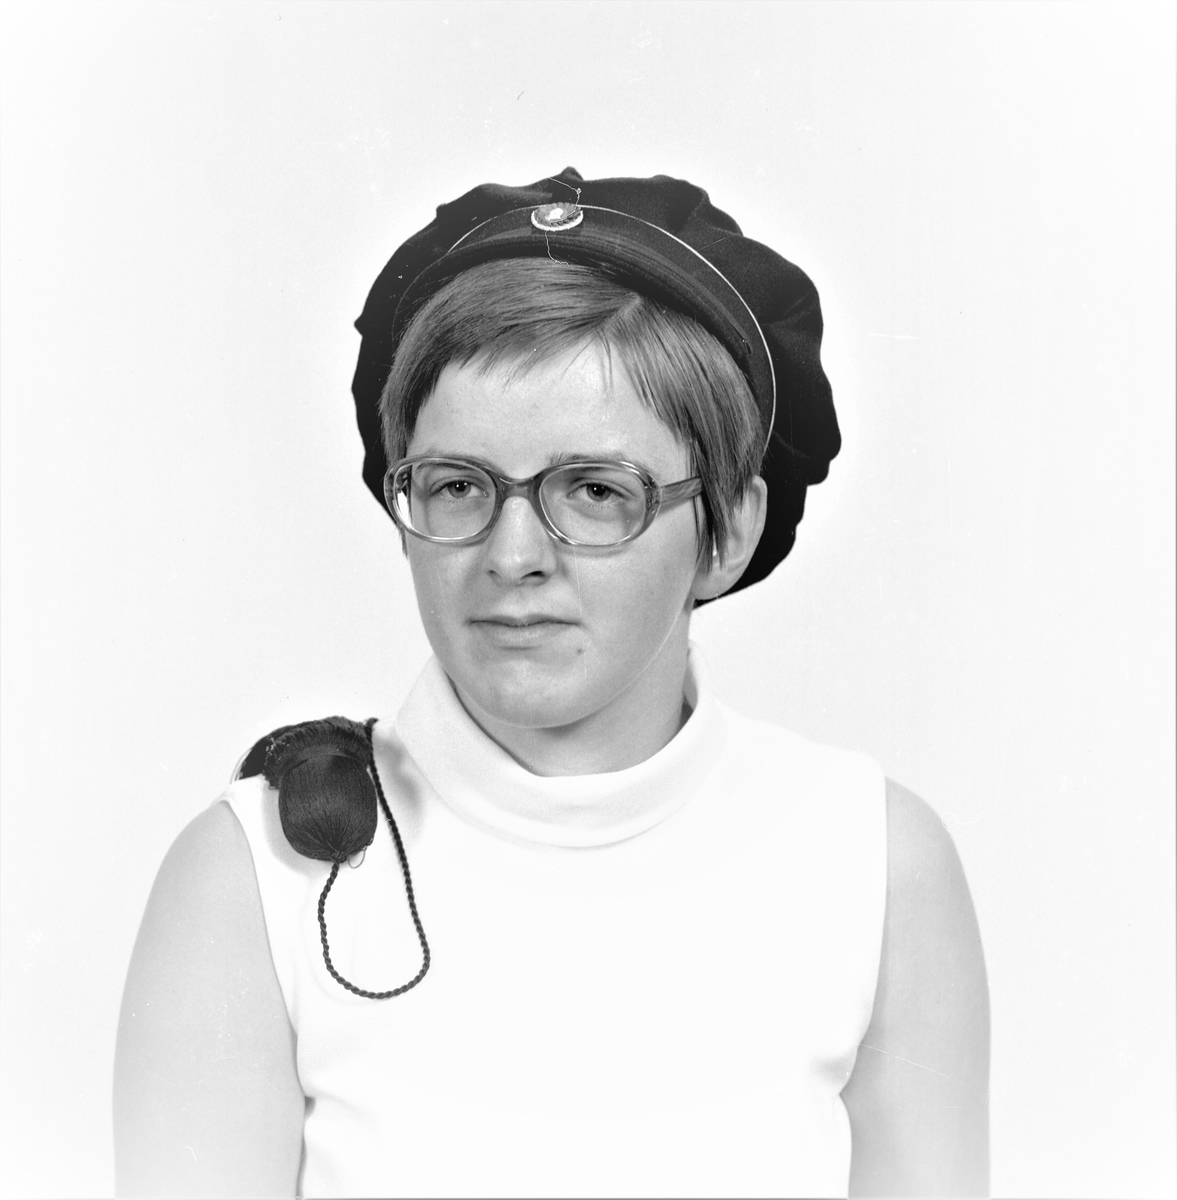 Portrett. Ung mann. Portrett. Ung kvinne med briller og studentlue. Bestilt av Eivind Risanger. Breidablikkgata 149